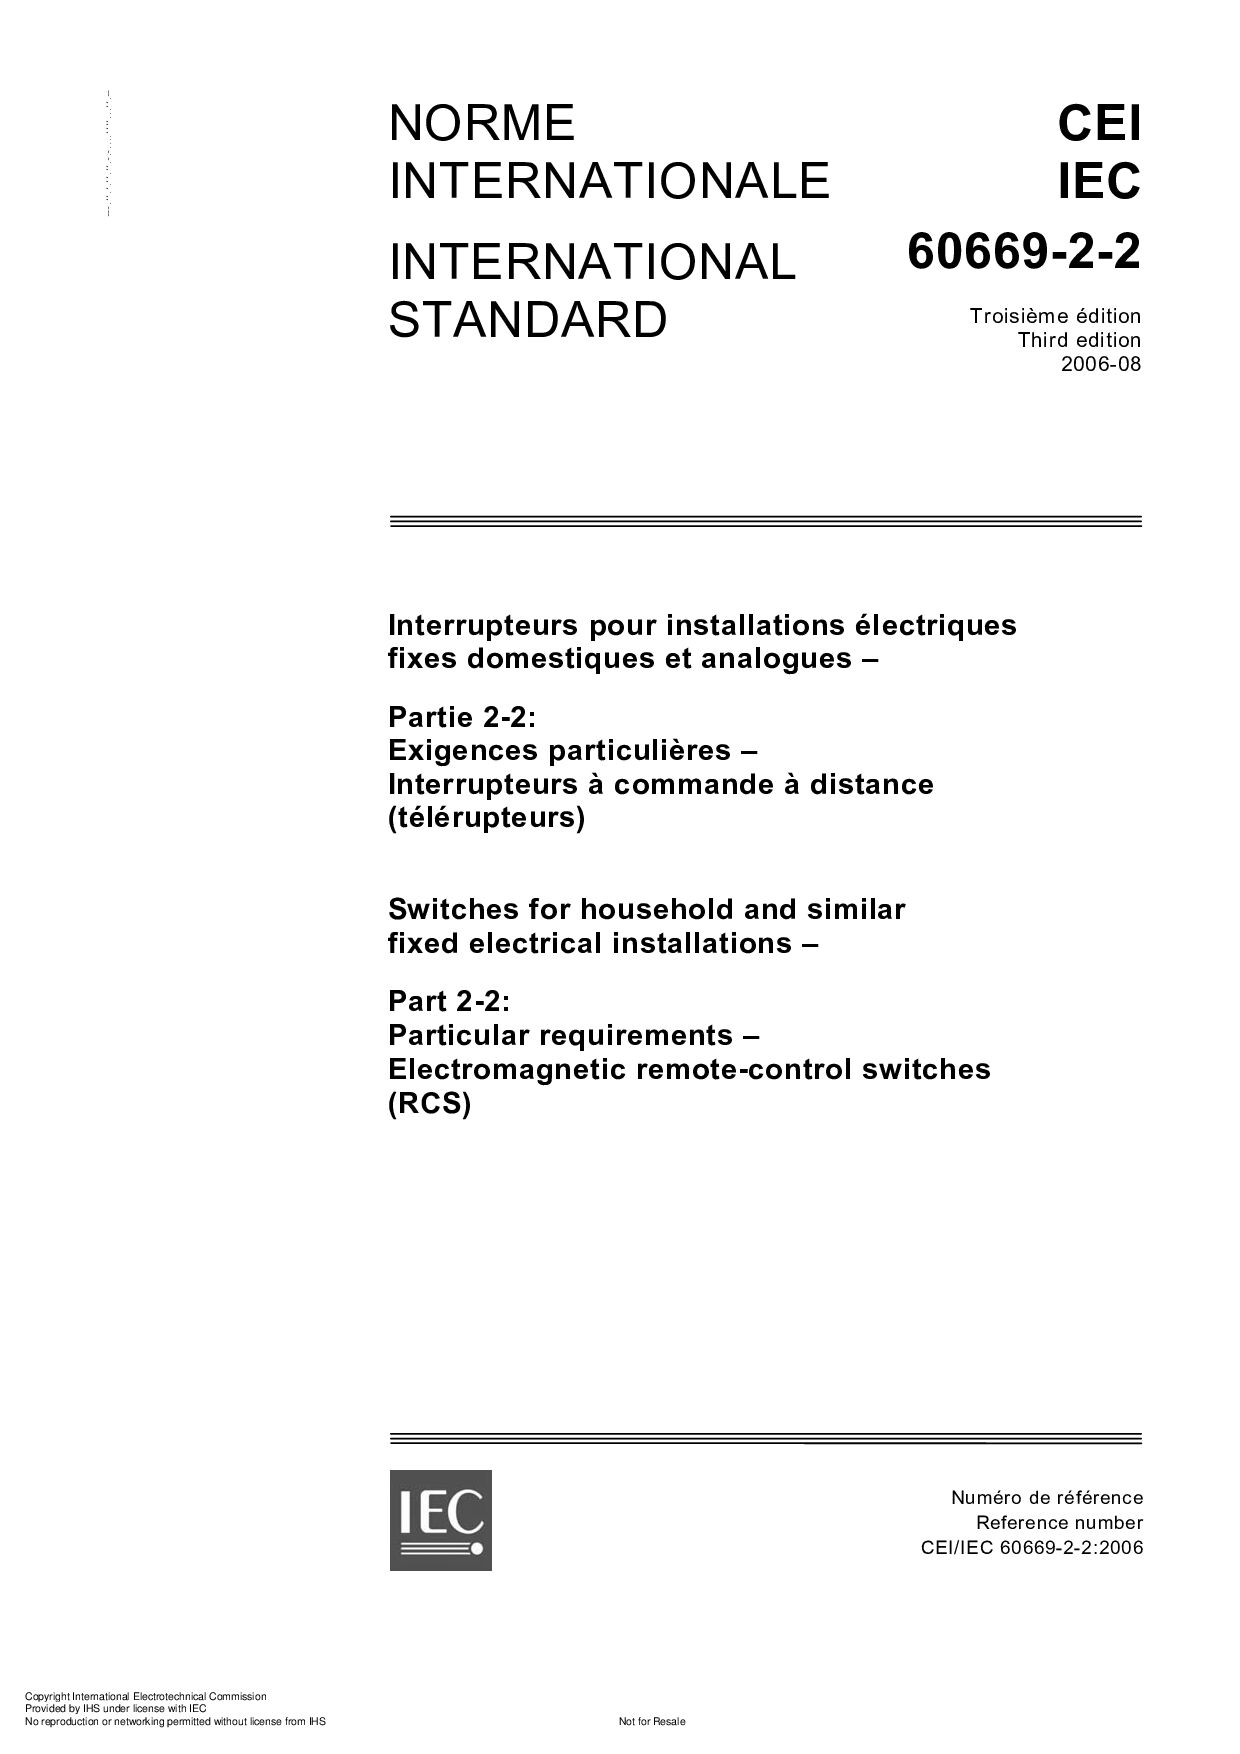 IEC 60669-2-2:2006